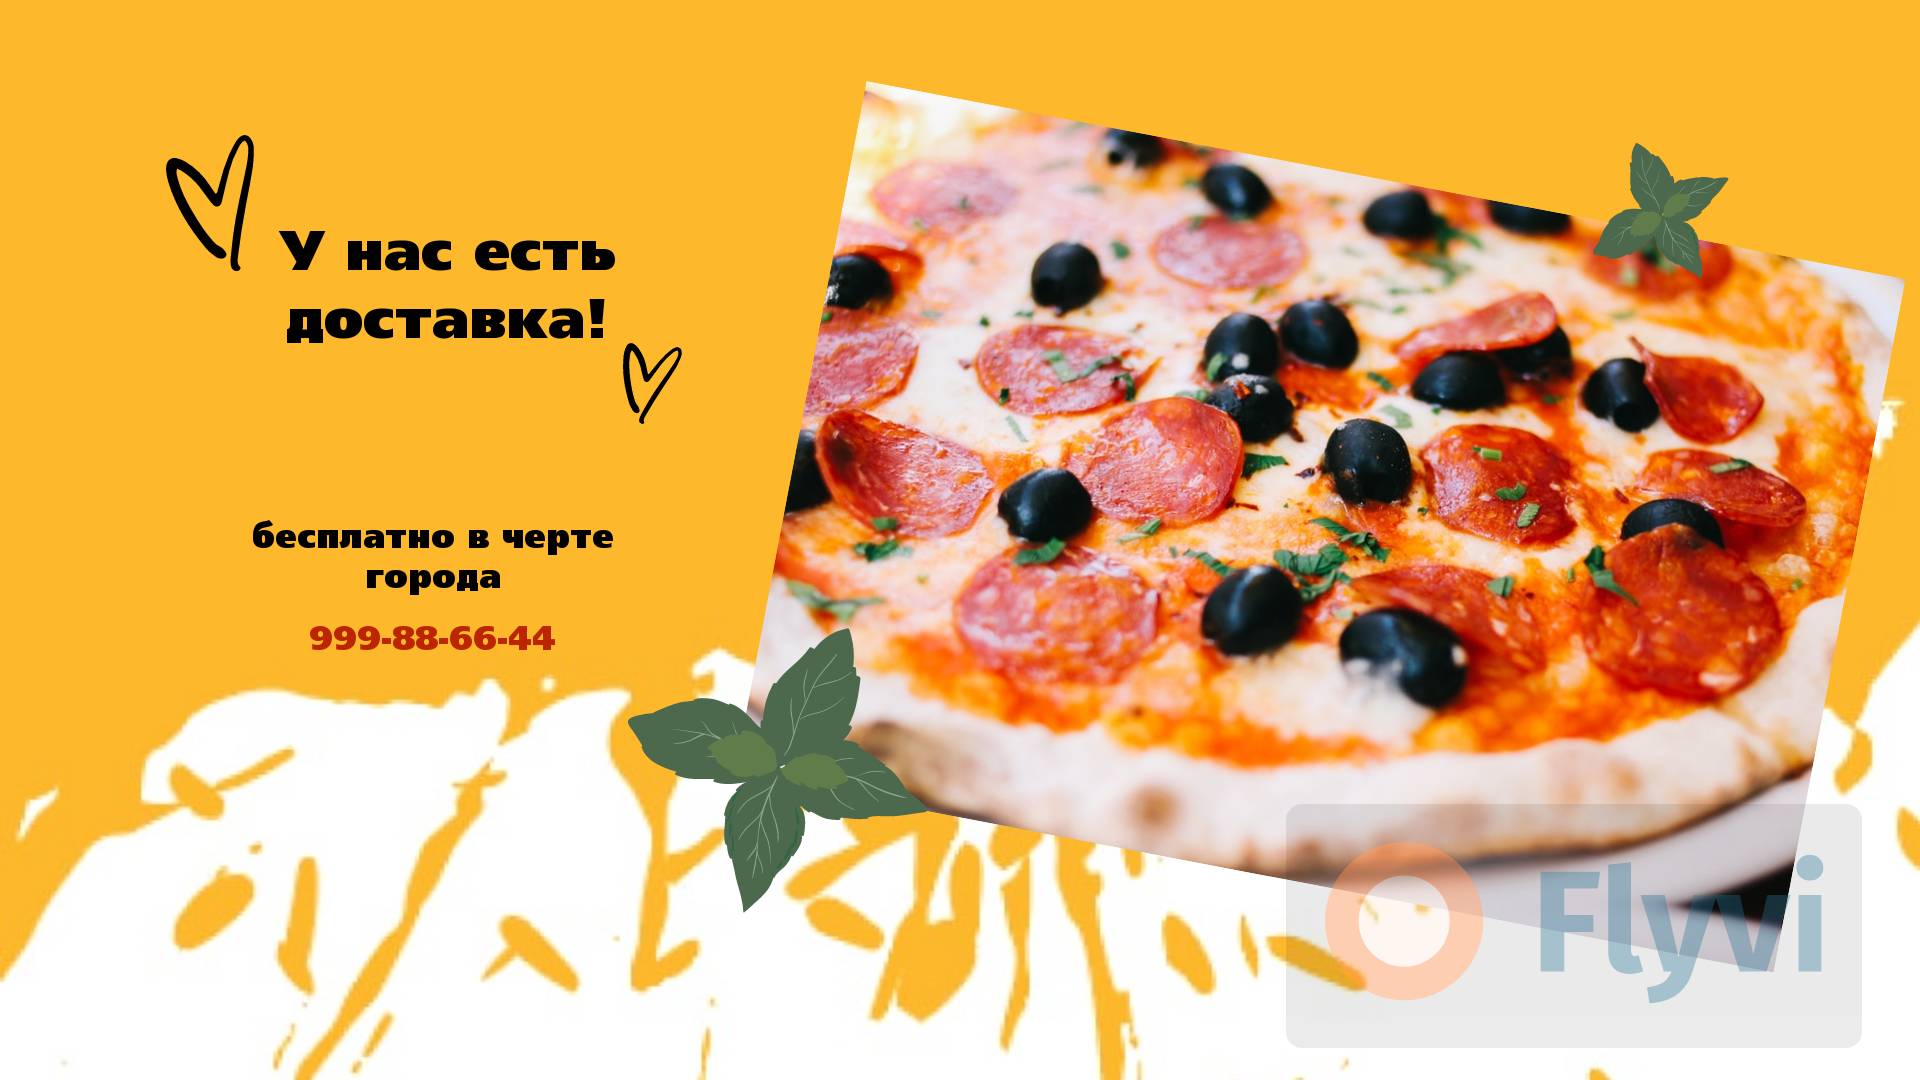 Яркая желтая публикация со свежеиспеченной пиццей с салями для рекламы ресторана доставки